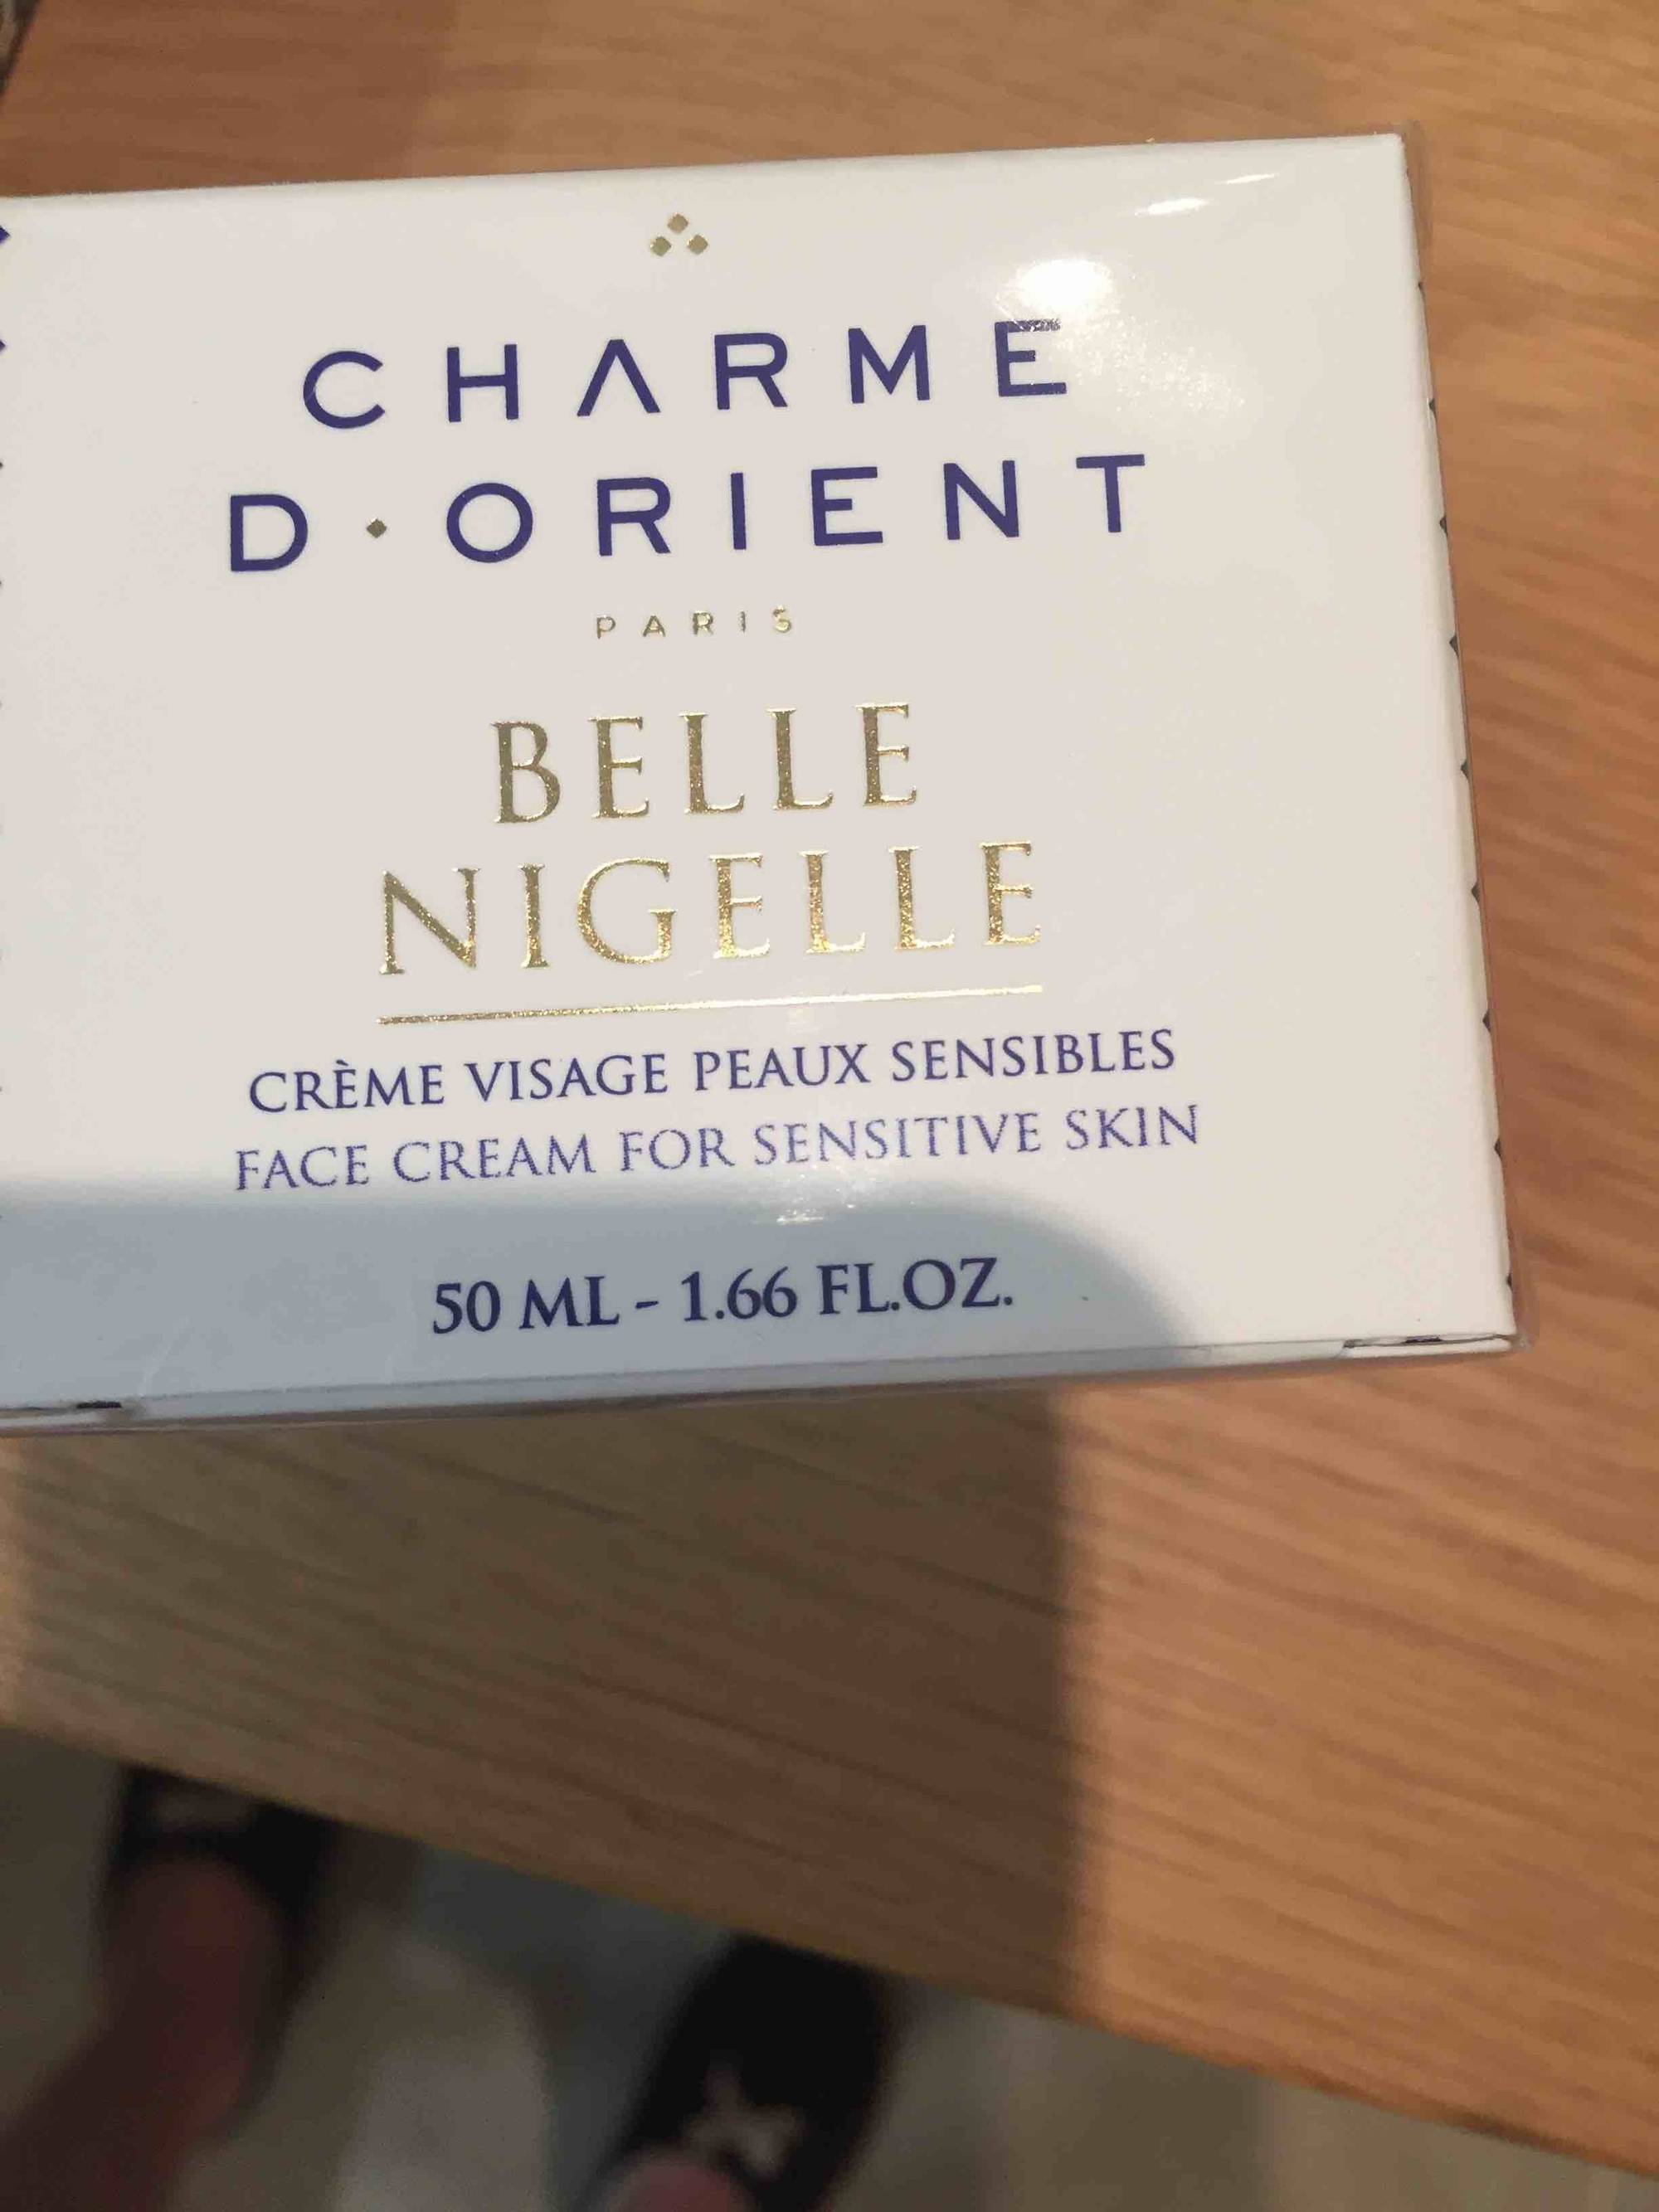 CHARME D'ORIENT - Belle Nigelle - Crème visage peaux sensibles